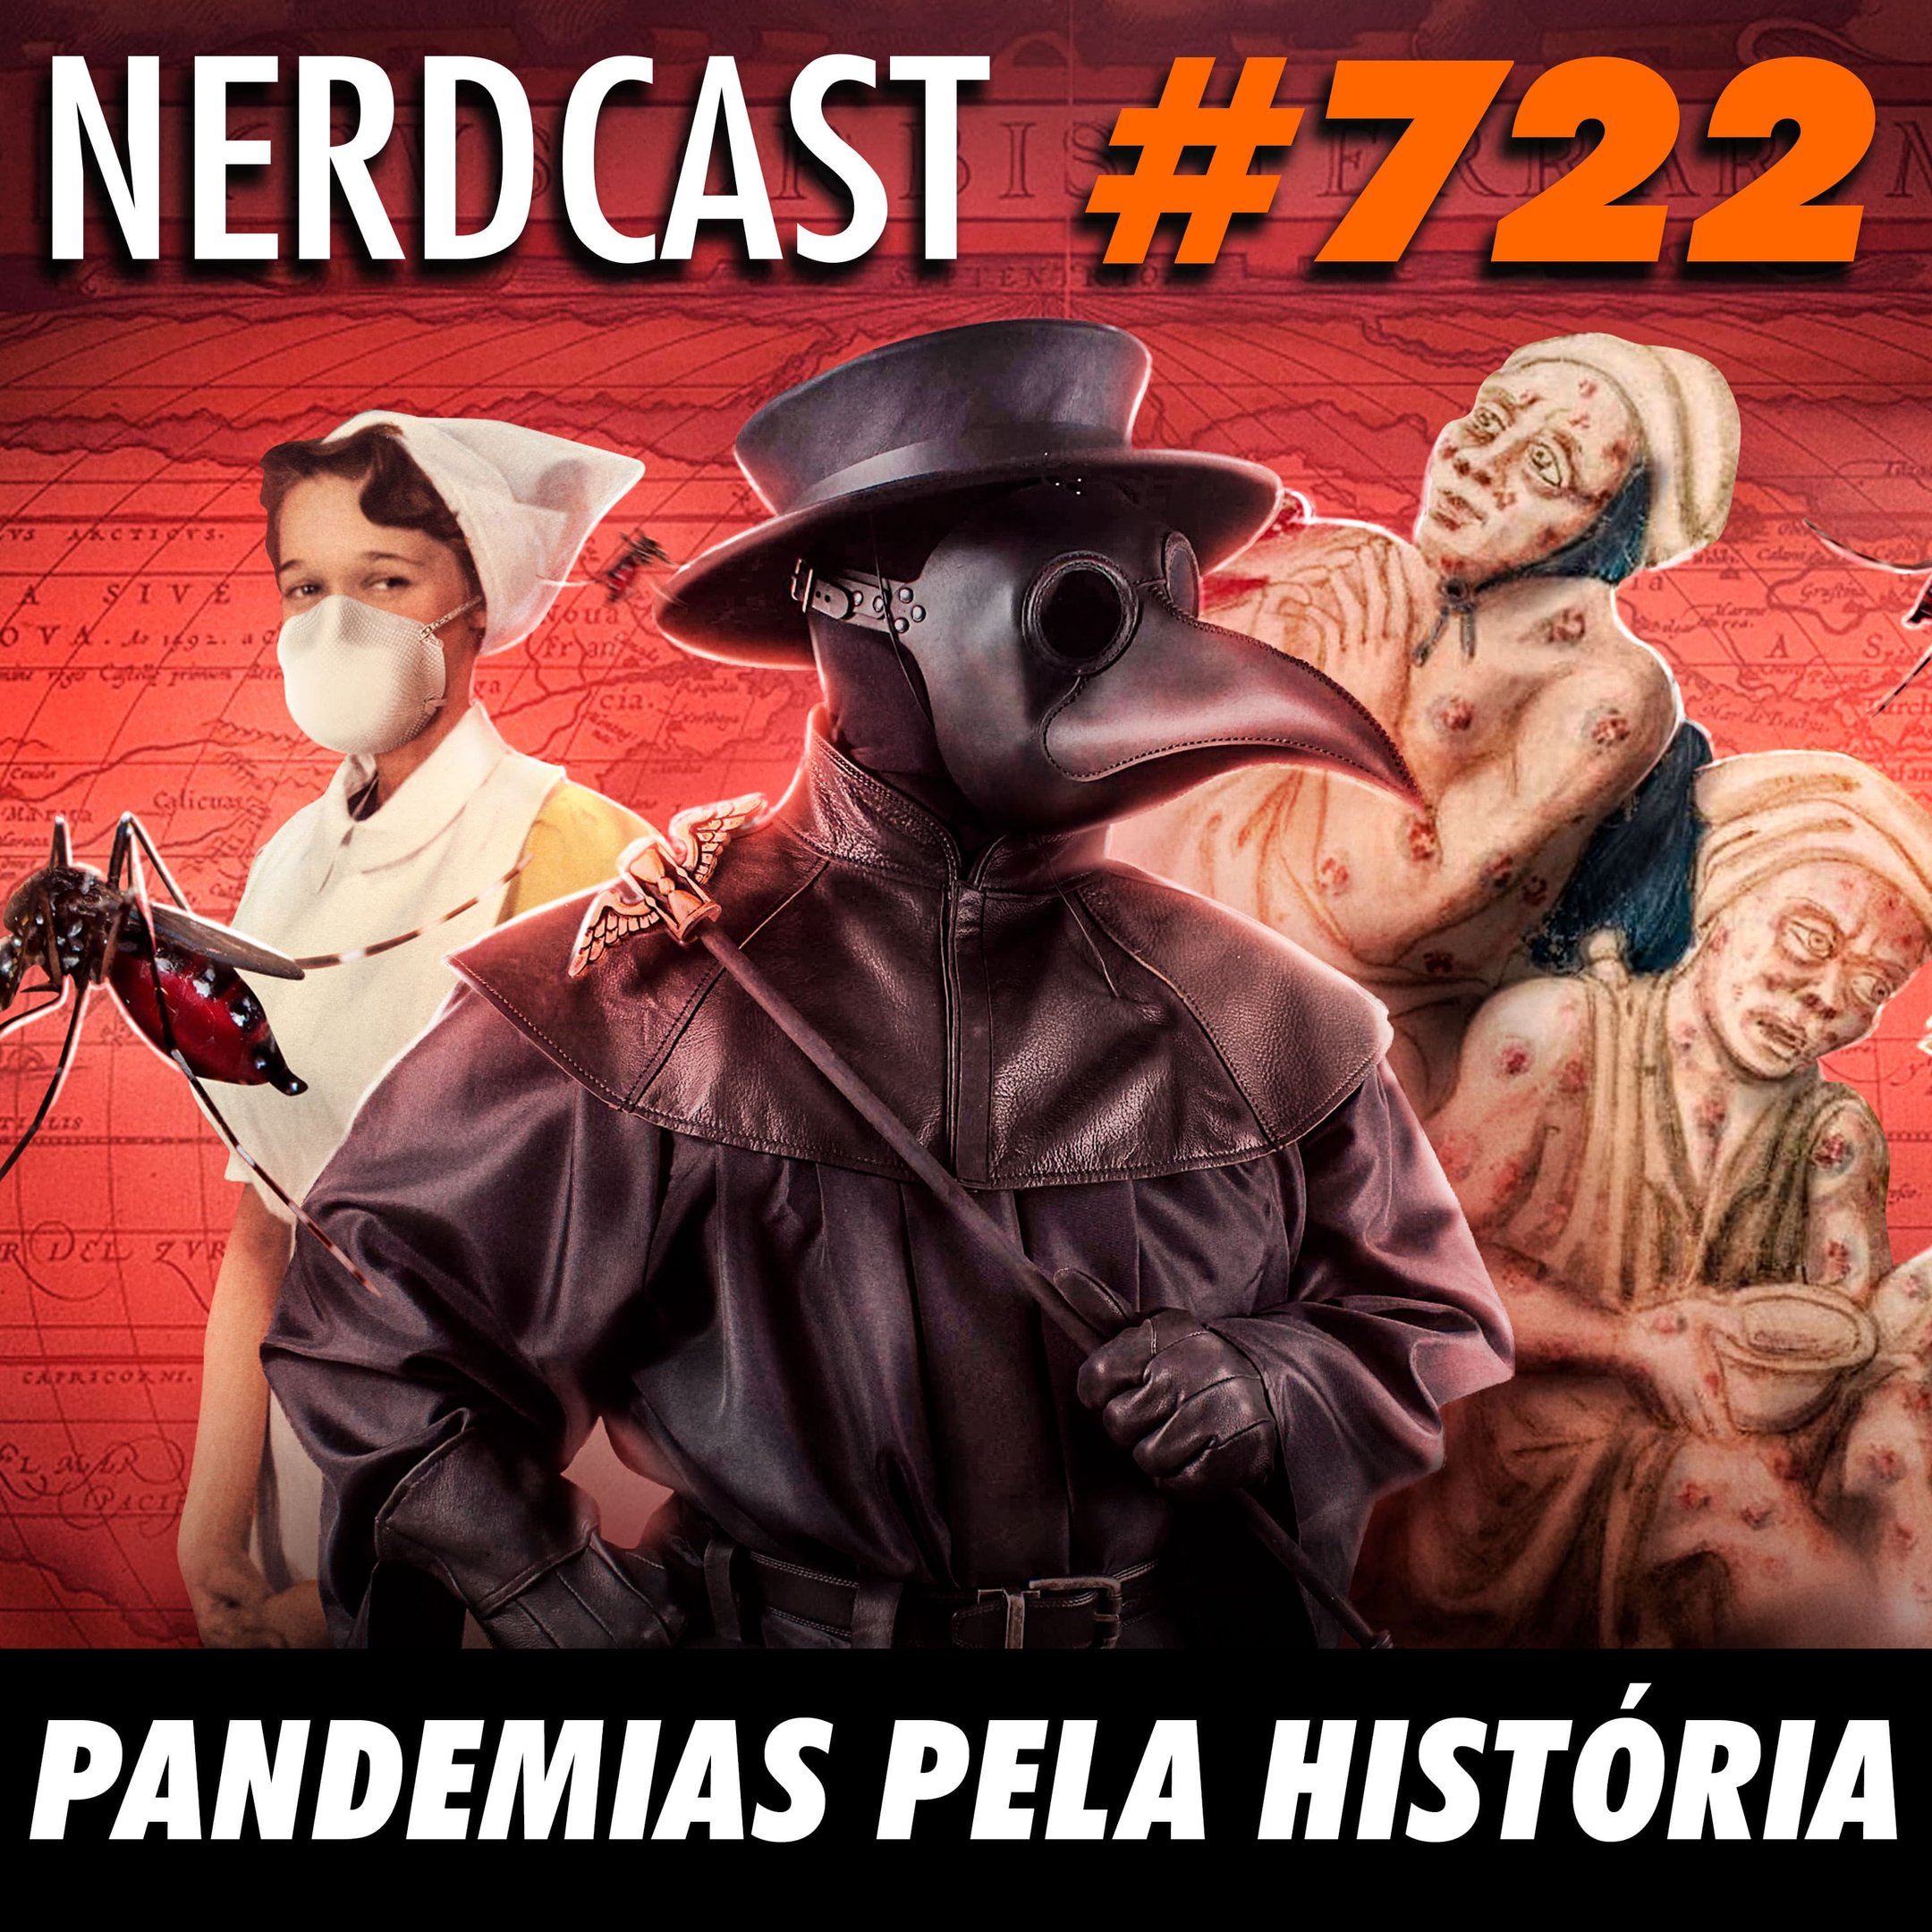 NerdCast 722 - Pandemias pela história